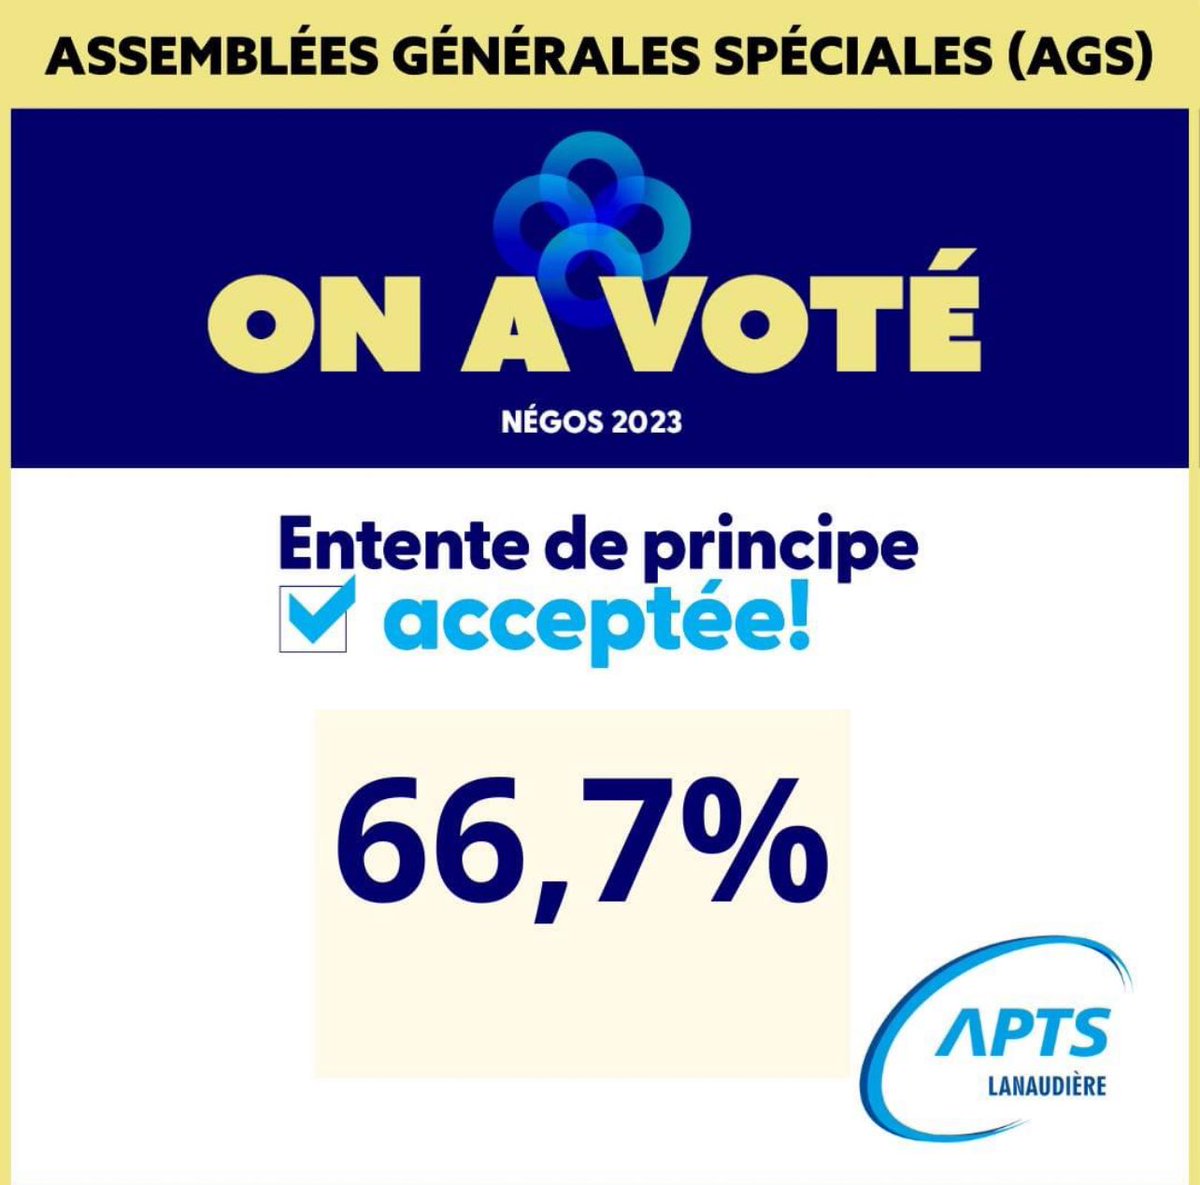 Suivant les 5 assemblées générales spéciales (AGS) survenues du 15 au 19 janvier, voici le résultat pour l’APTS Lanaudière.